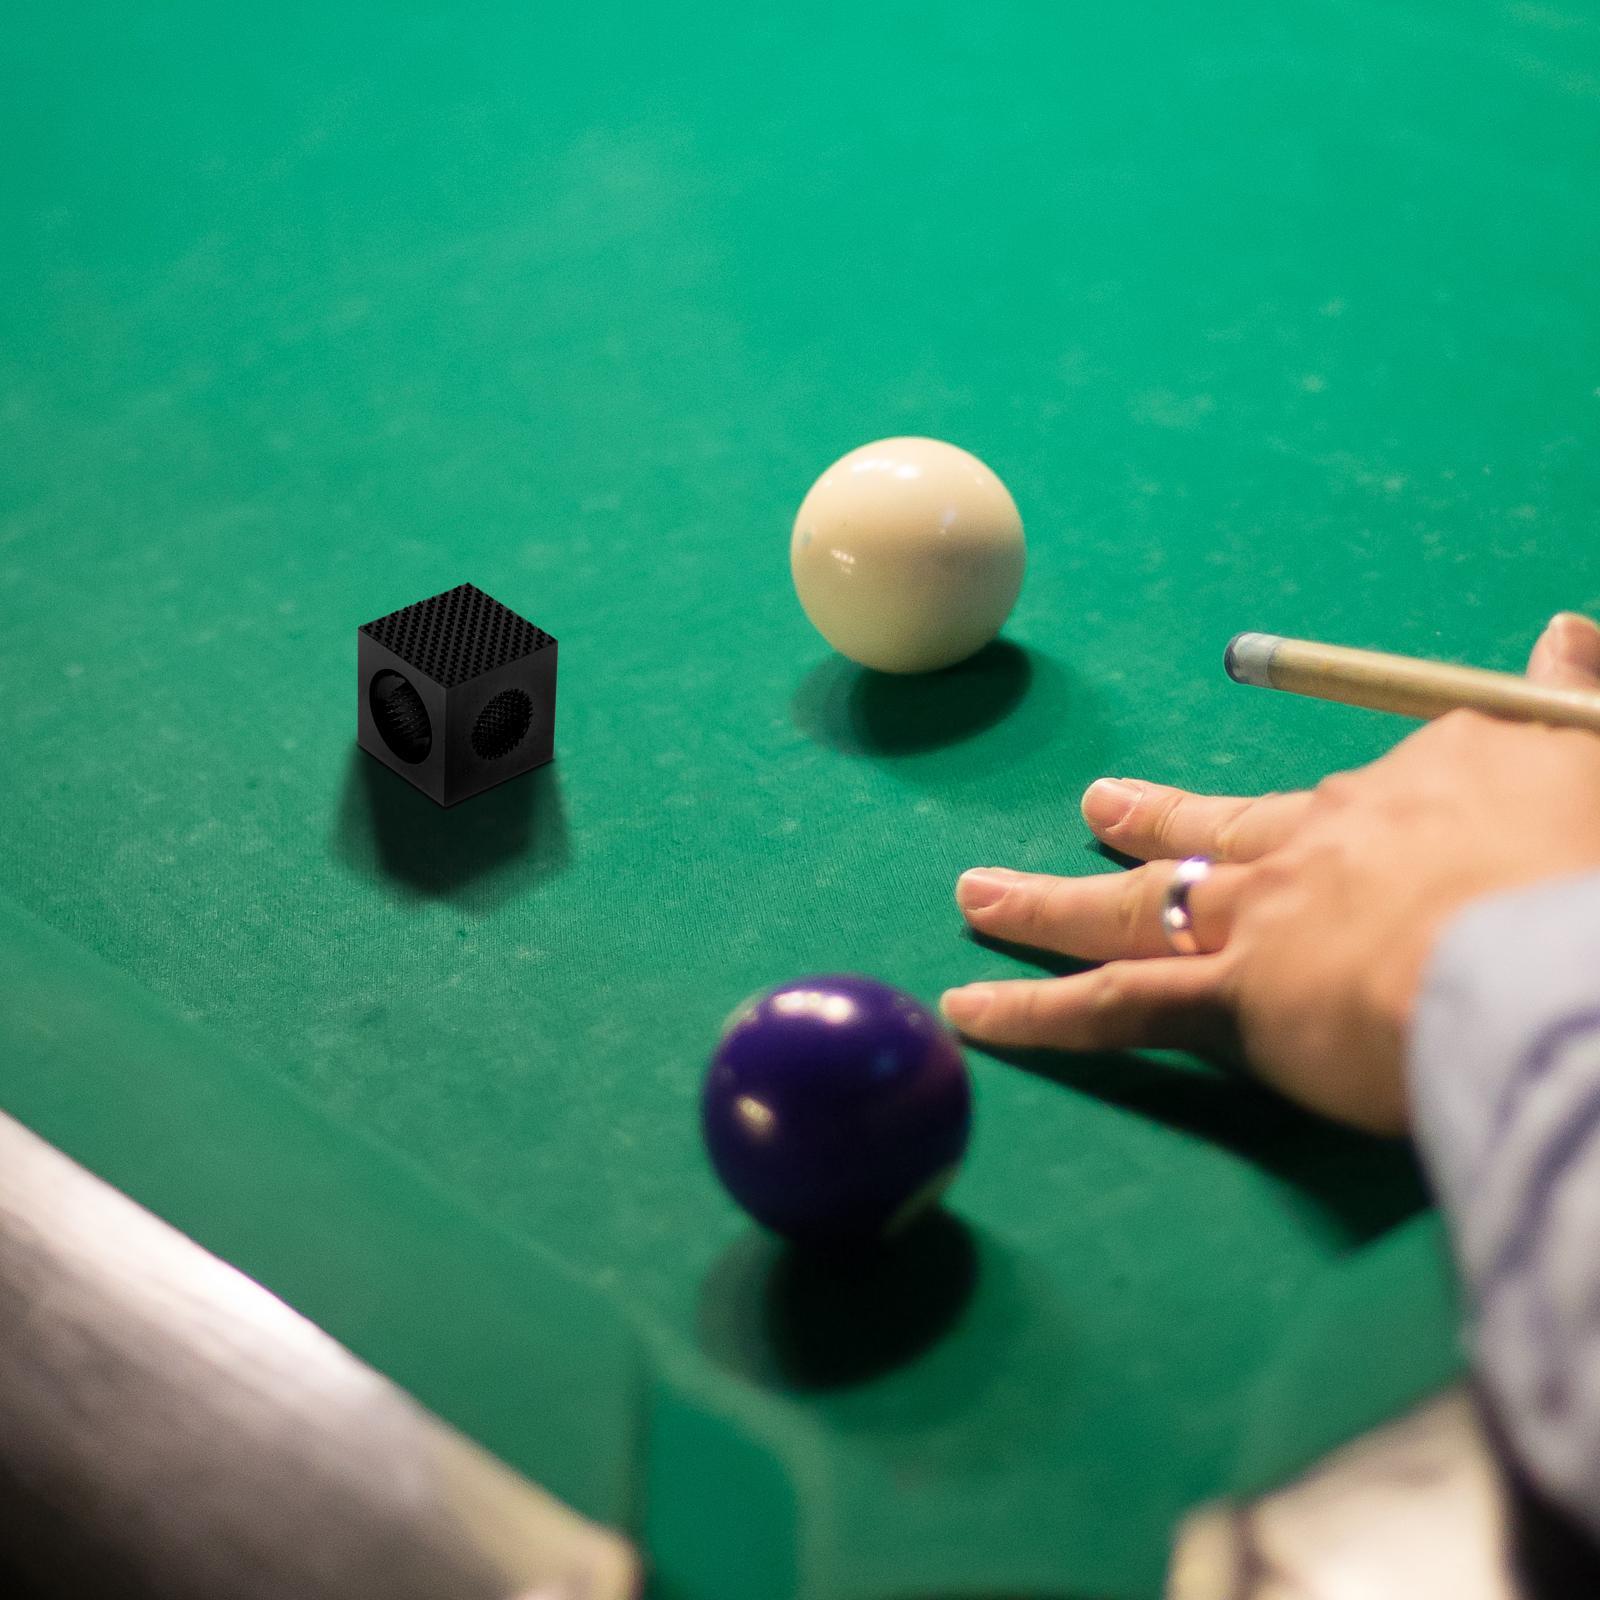 Snooker Pool Cue Tip Repair Tool Burnisher Perforator for Maintenance Black